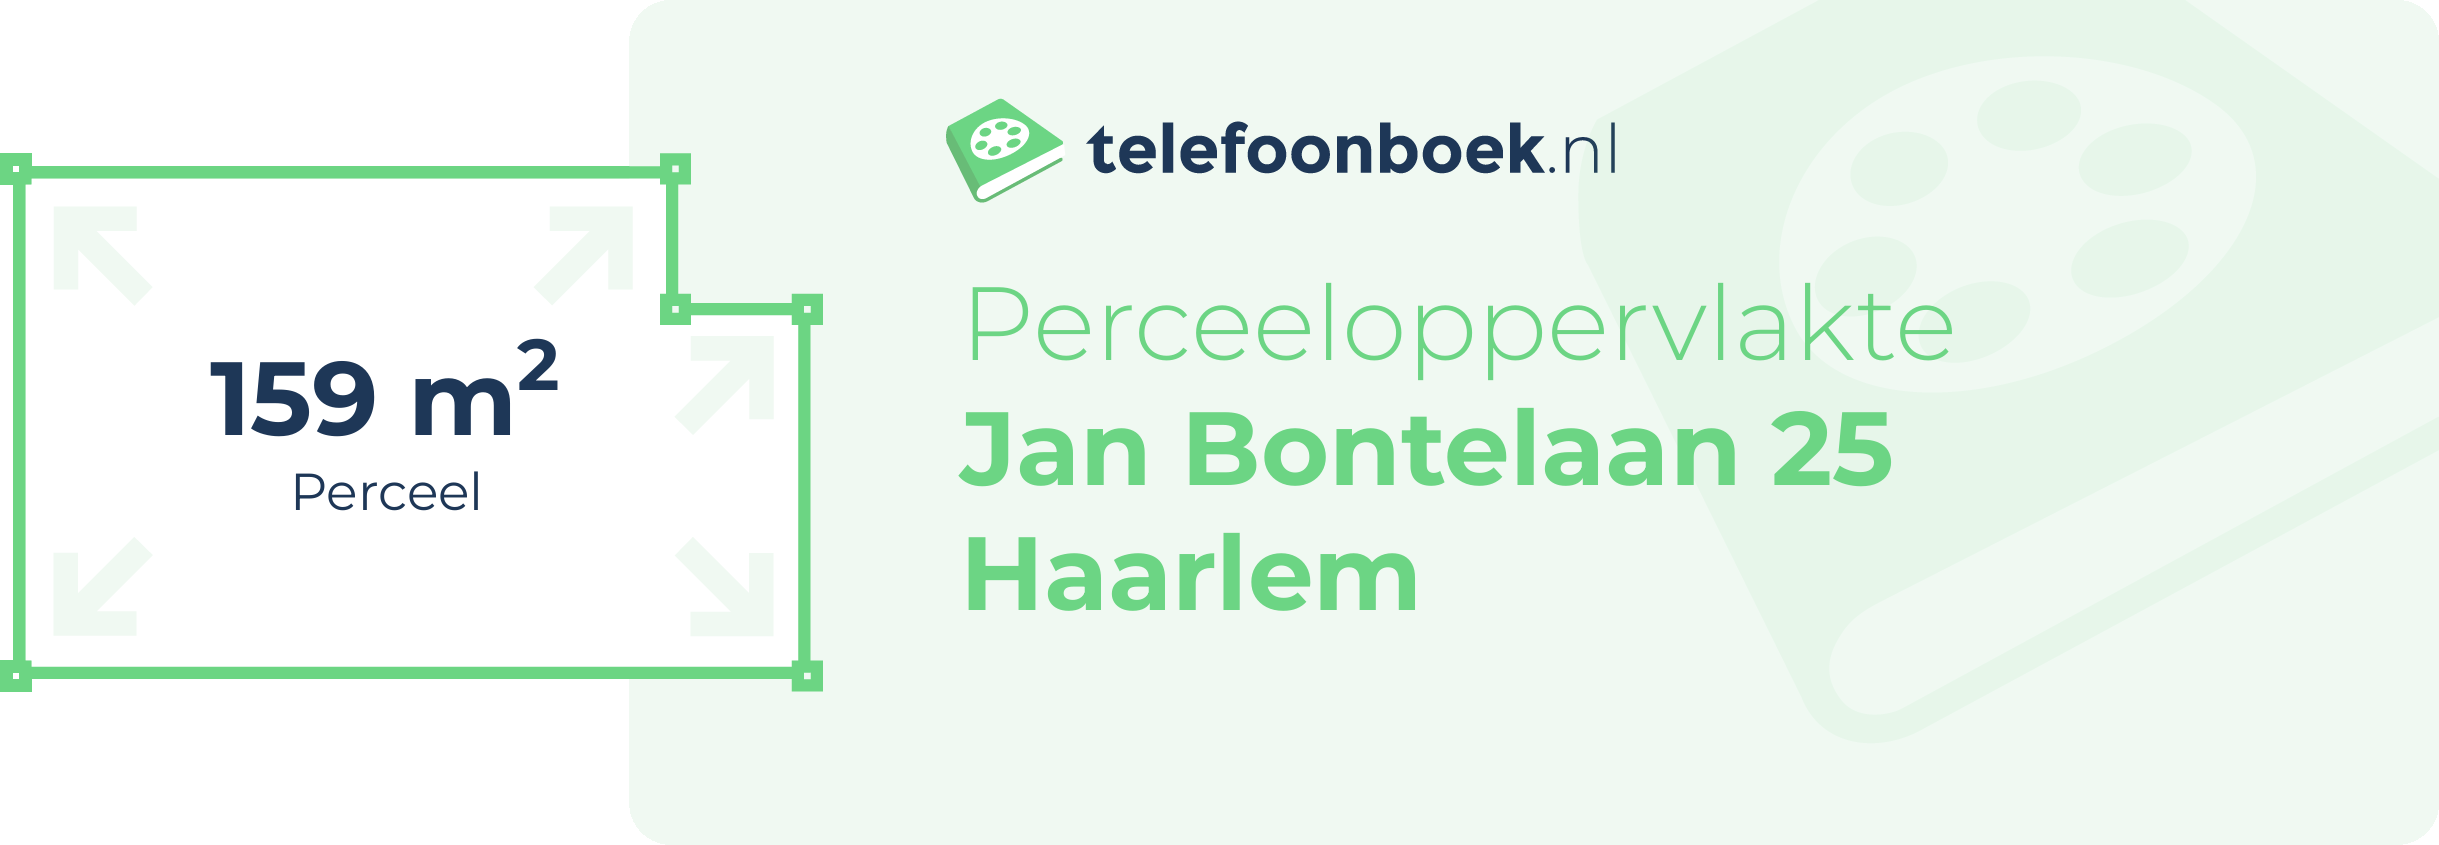 Perceeloppervlakte Jan Bontelaan 25 Haarlem